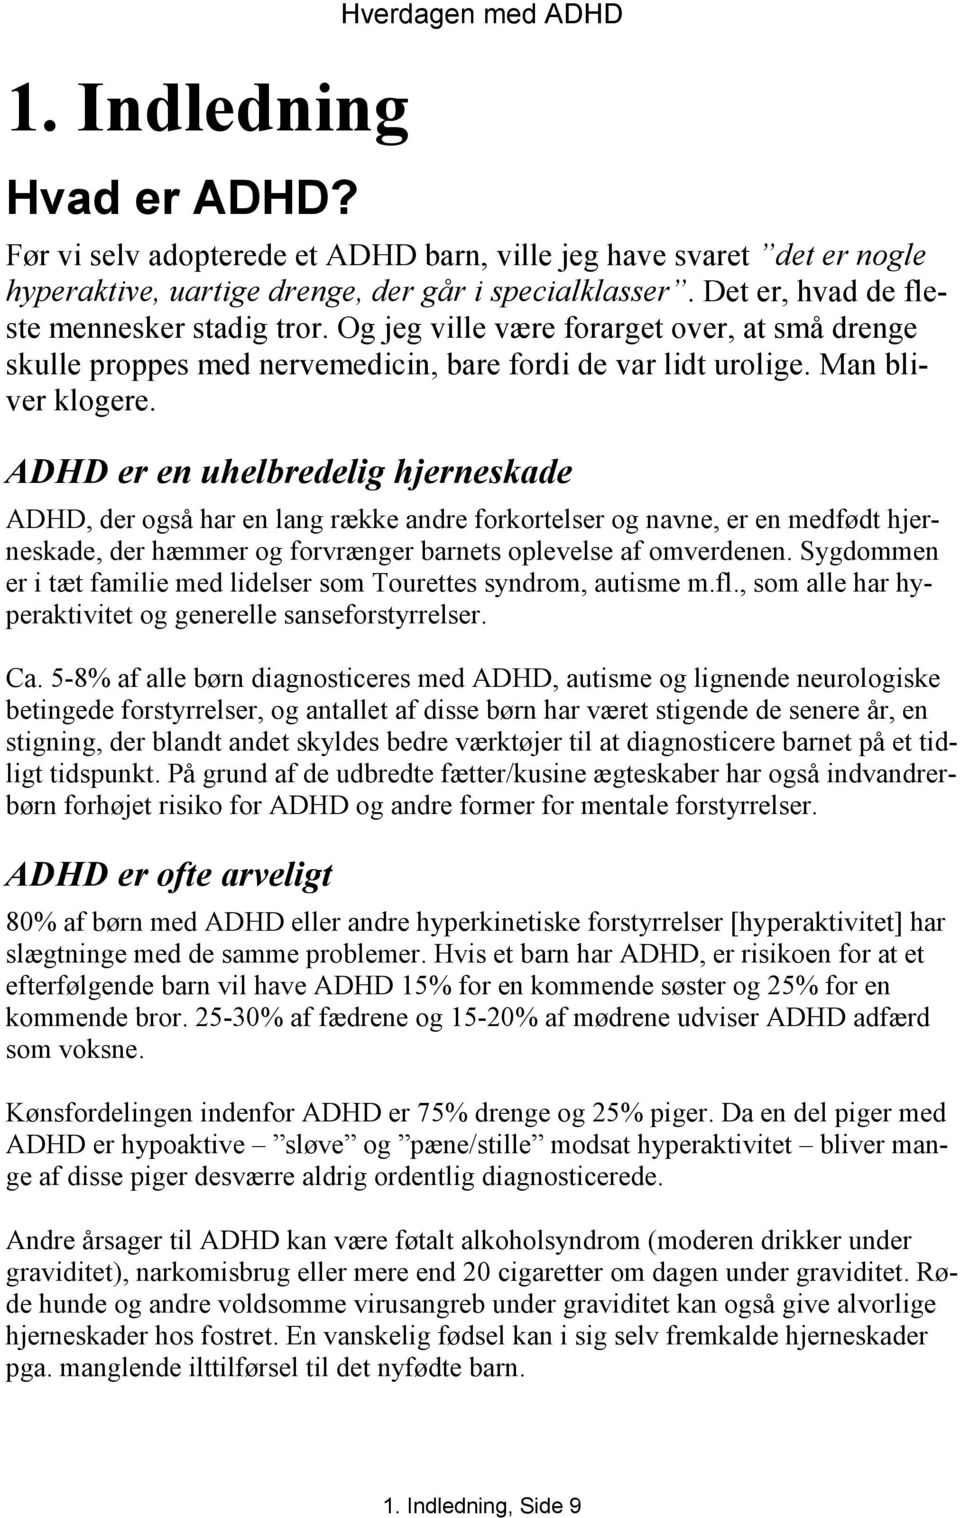 Hverdagen med ADHD. Digital Books - PDF Free Download